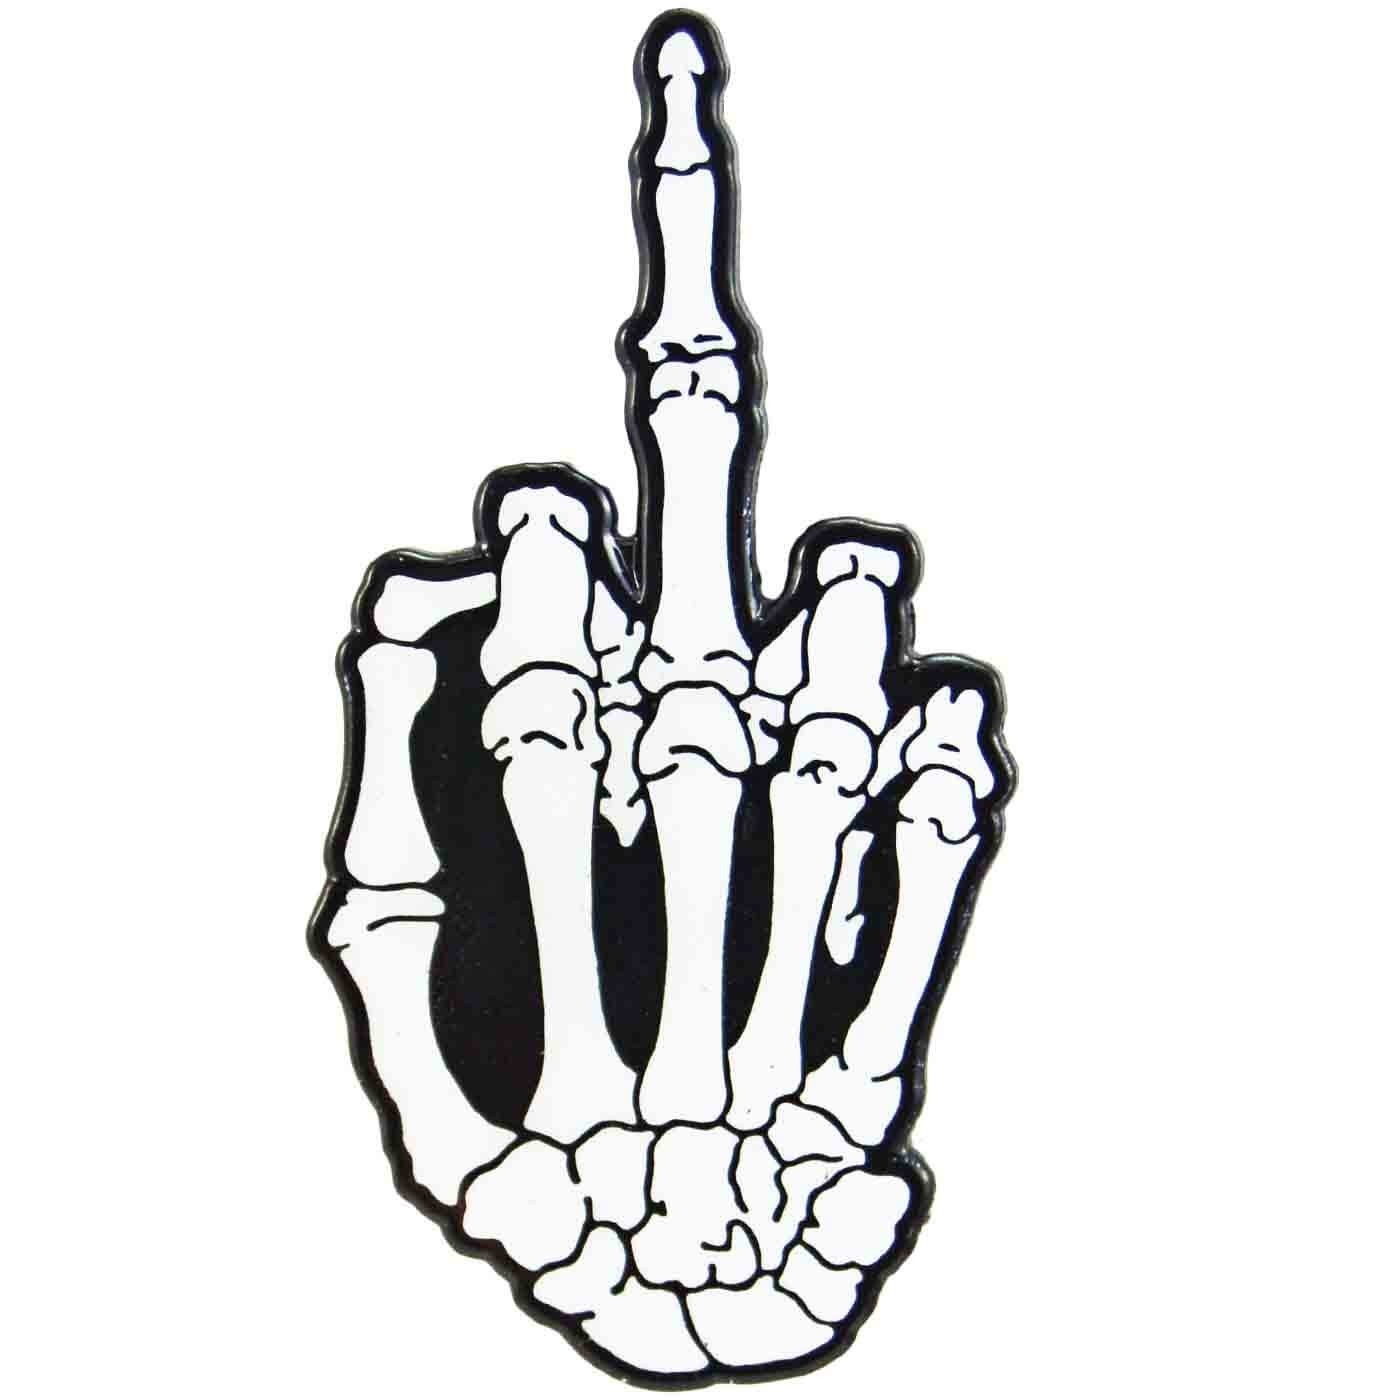 Transparent Skeleton Middle Finger - Shop the top 25 most popular 1 at the ...